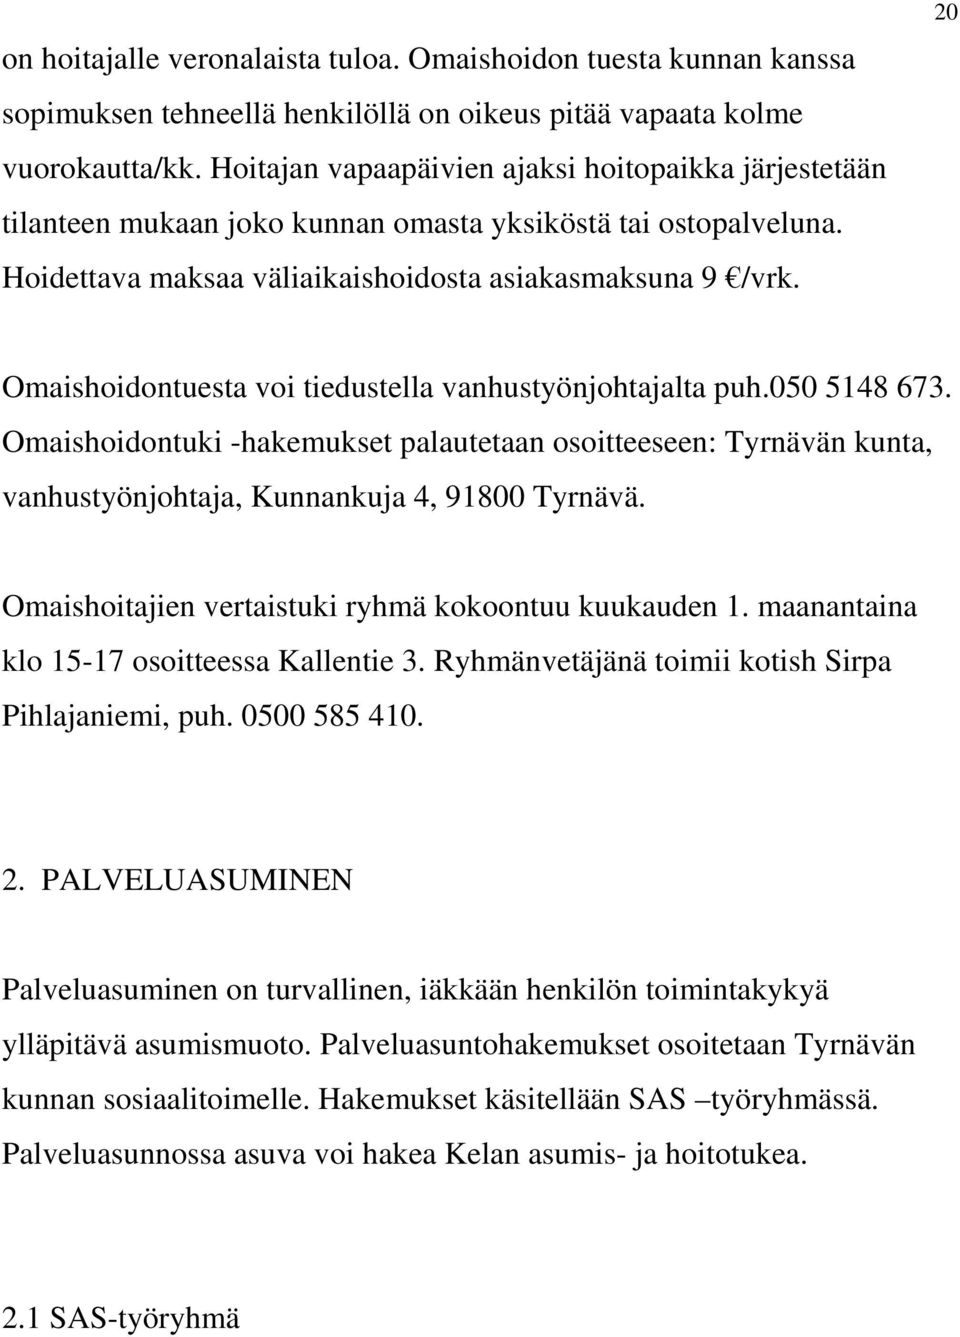 20 Omaishoidontuesta voi tiedustella vanhustyönjohtajalta puh.050 5148 673. Omaishoidontuki -hakemukset palautetaan osoitteeseen: Tyrnävän kunta, vanhustyönjohtaja, Kunnankuja 4, 91800 Tyrnävä.